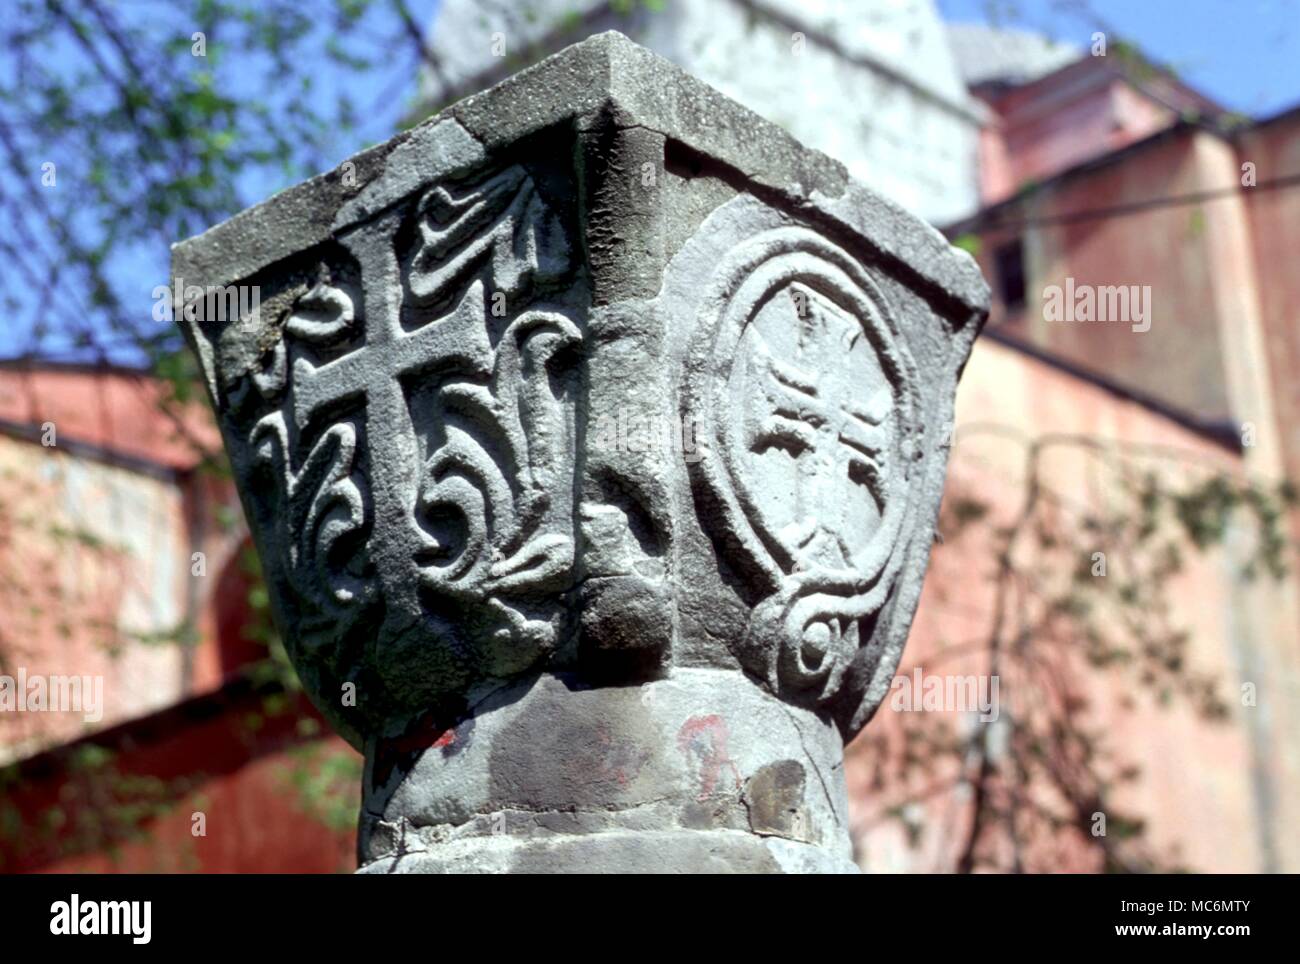 Symbole - Die frühen Christlichen Kreuz auf ein Kapital, jetzt im Garten der Hagia Sophia, Istanbul. Vermutlich 7. Stockfoto